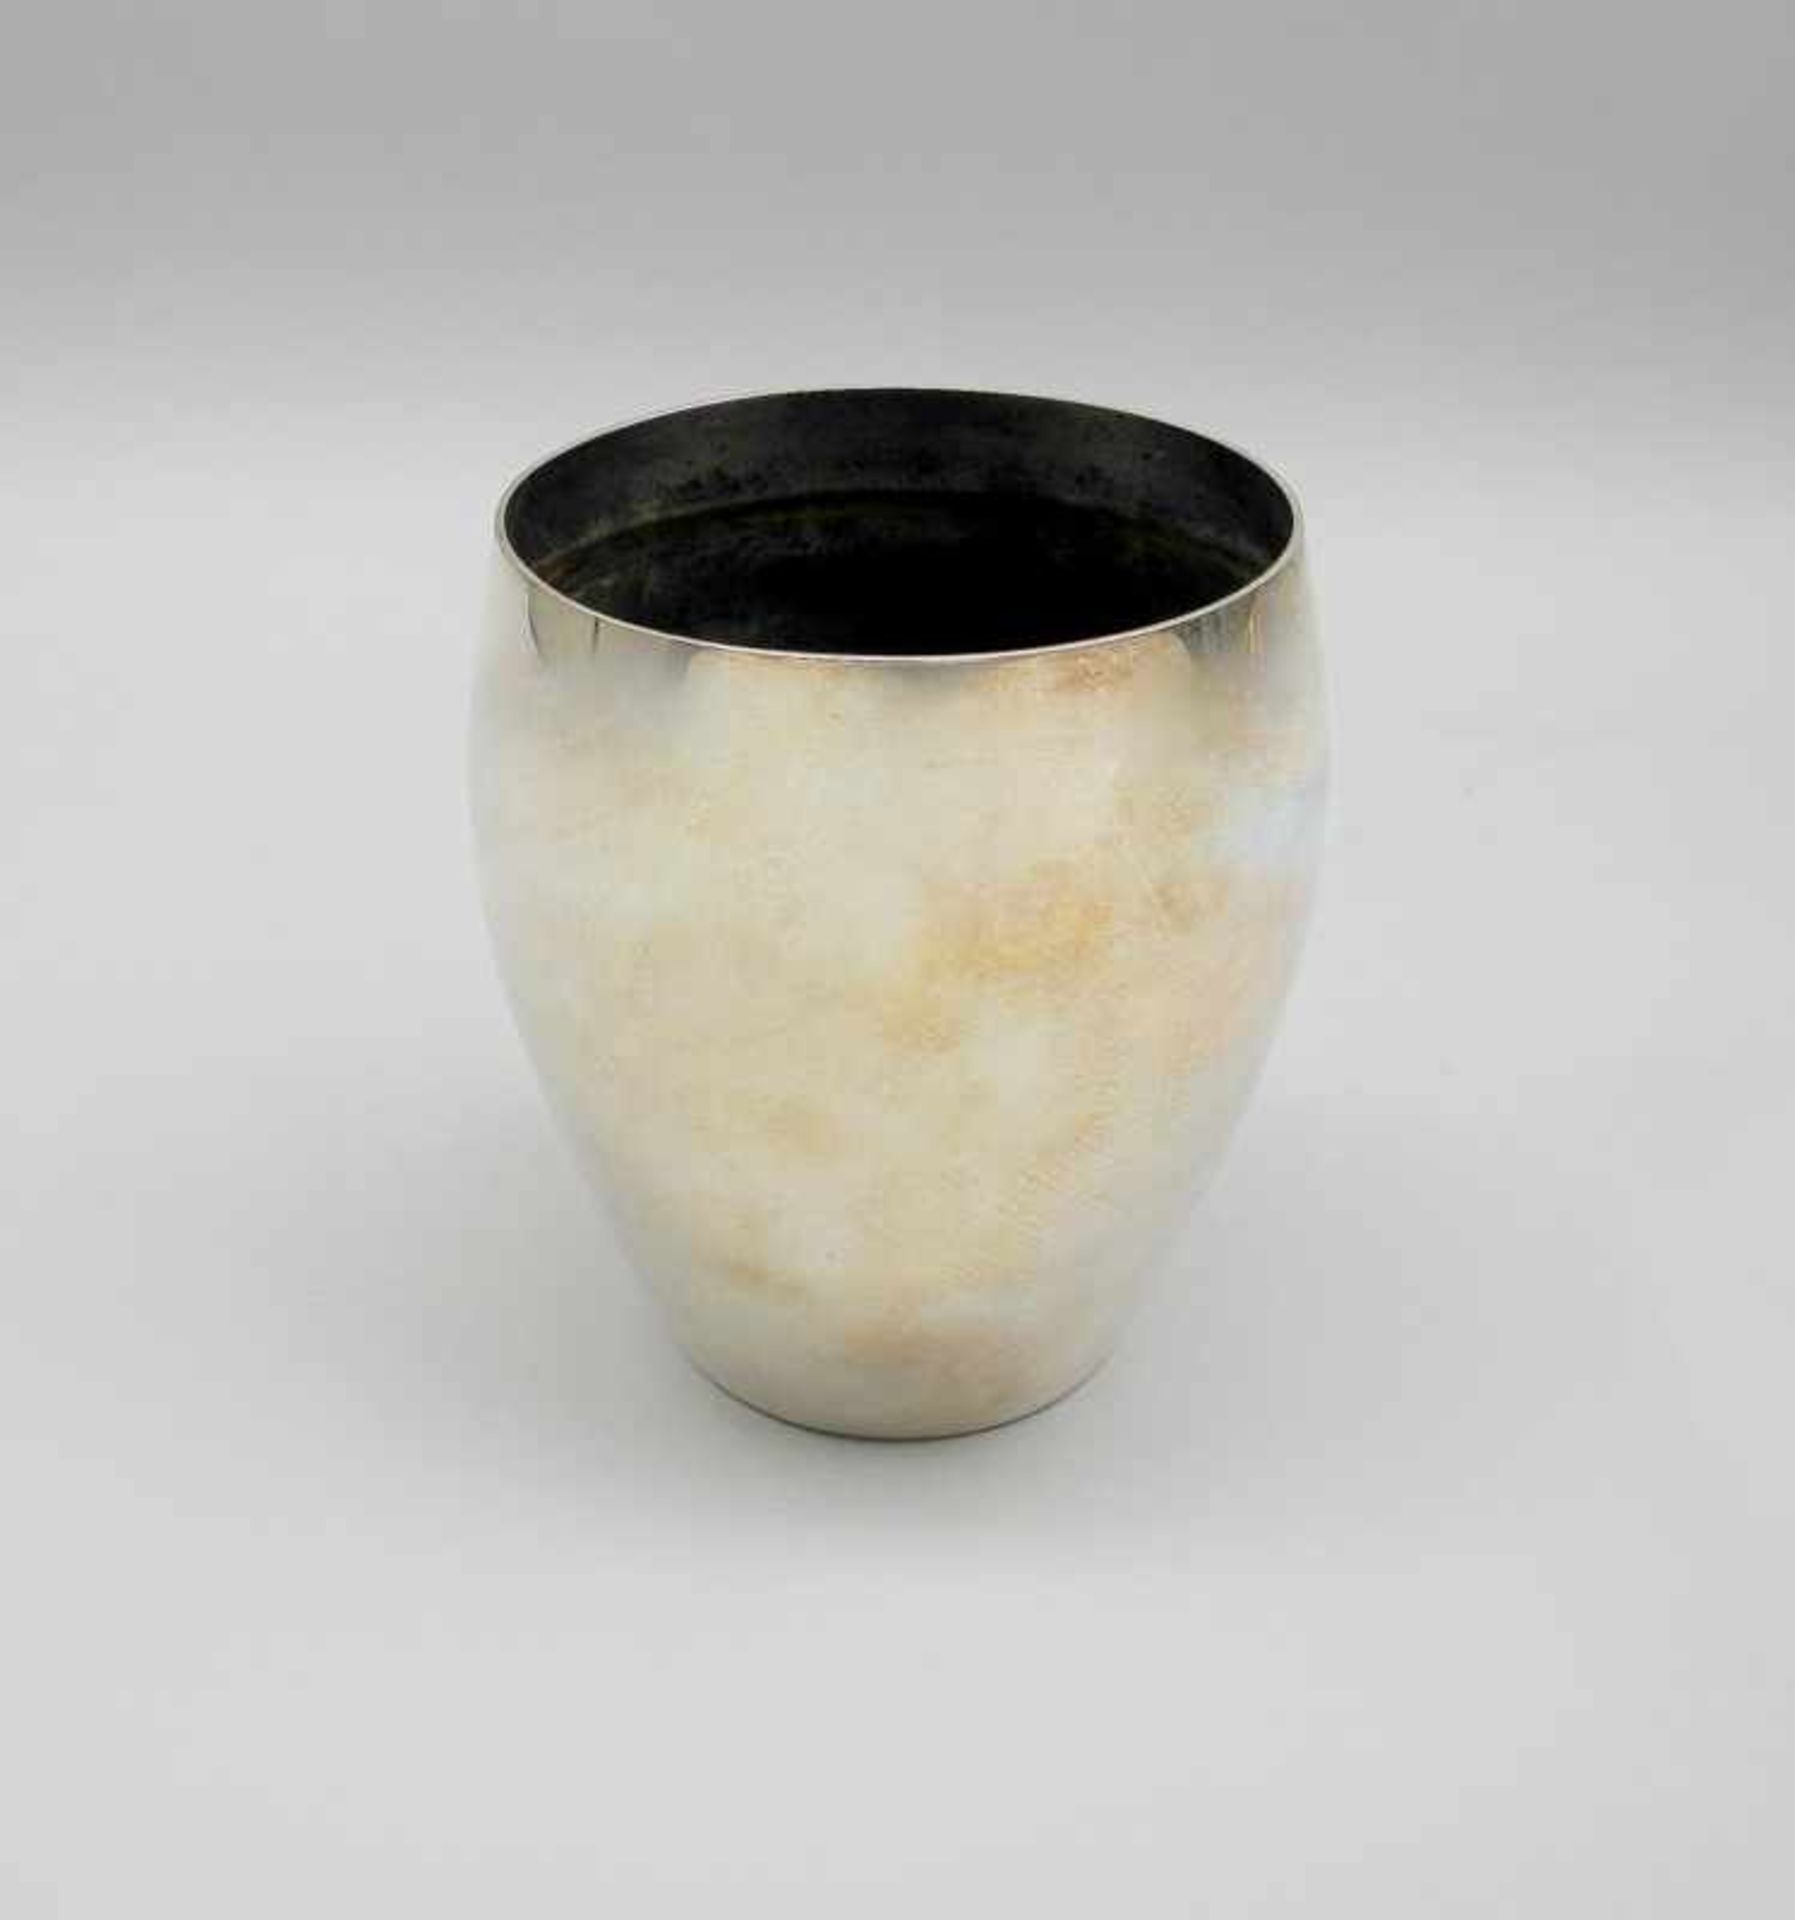 Versilberte VaseSilber plated, ungemarkt. Bauchförmige Vase, die sich durch schlichte Eleganz